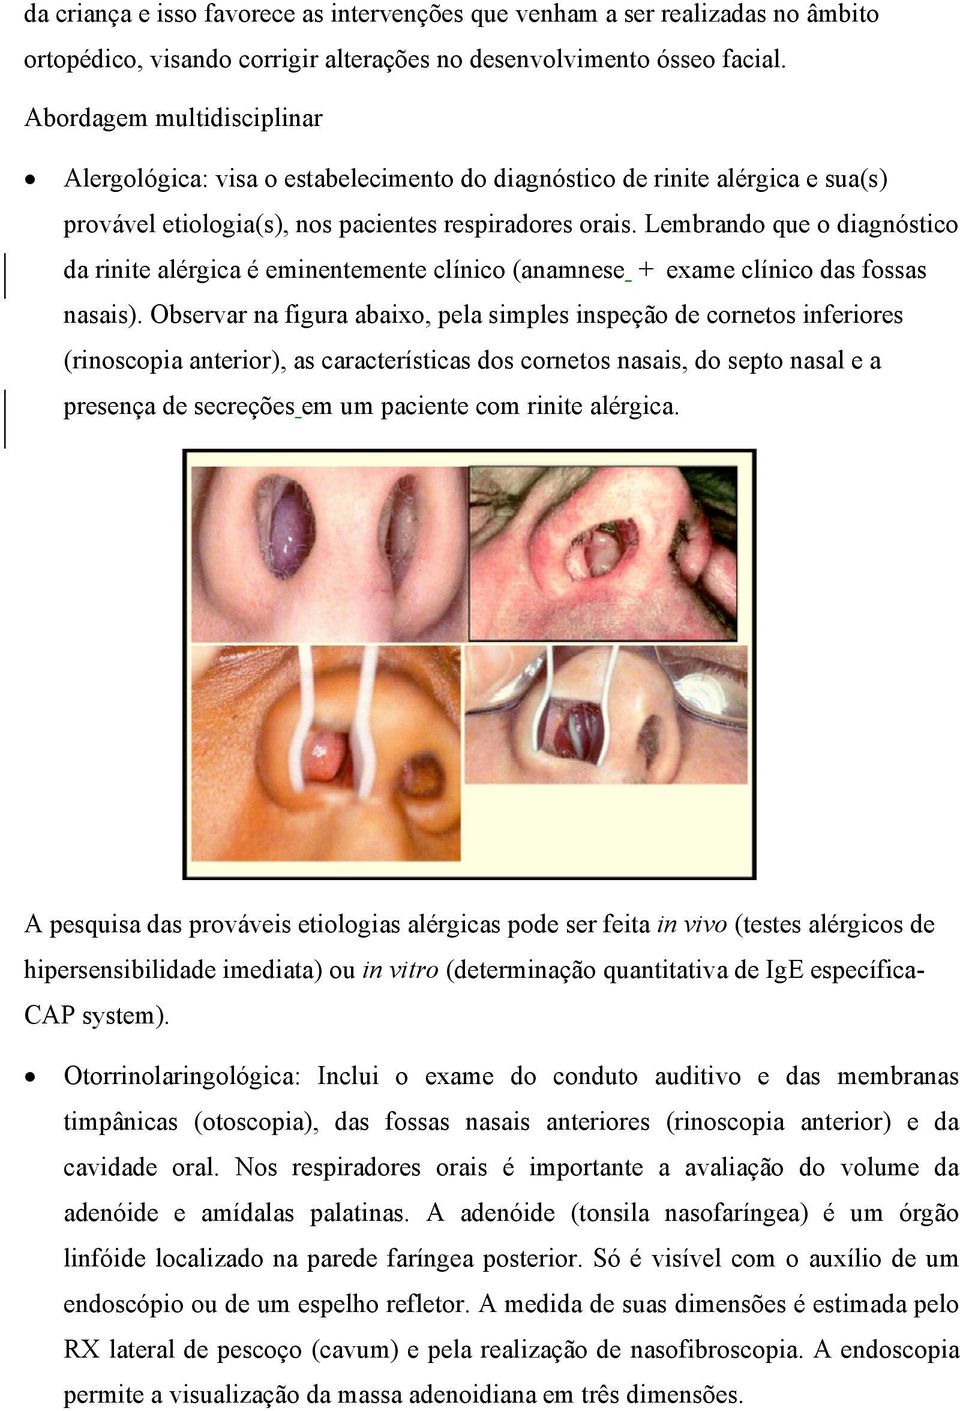 Lembrando que o diagnóstico da rinite alérgica é eminentemente clínico (anamnese + exame clínico das fossas nasais).